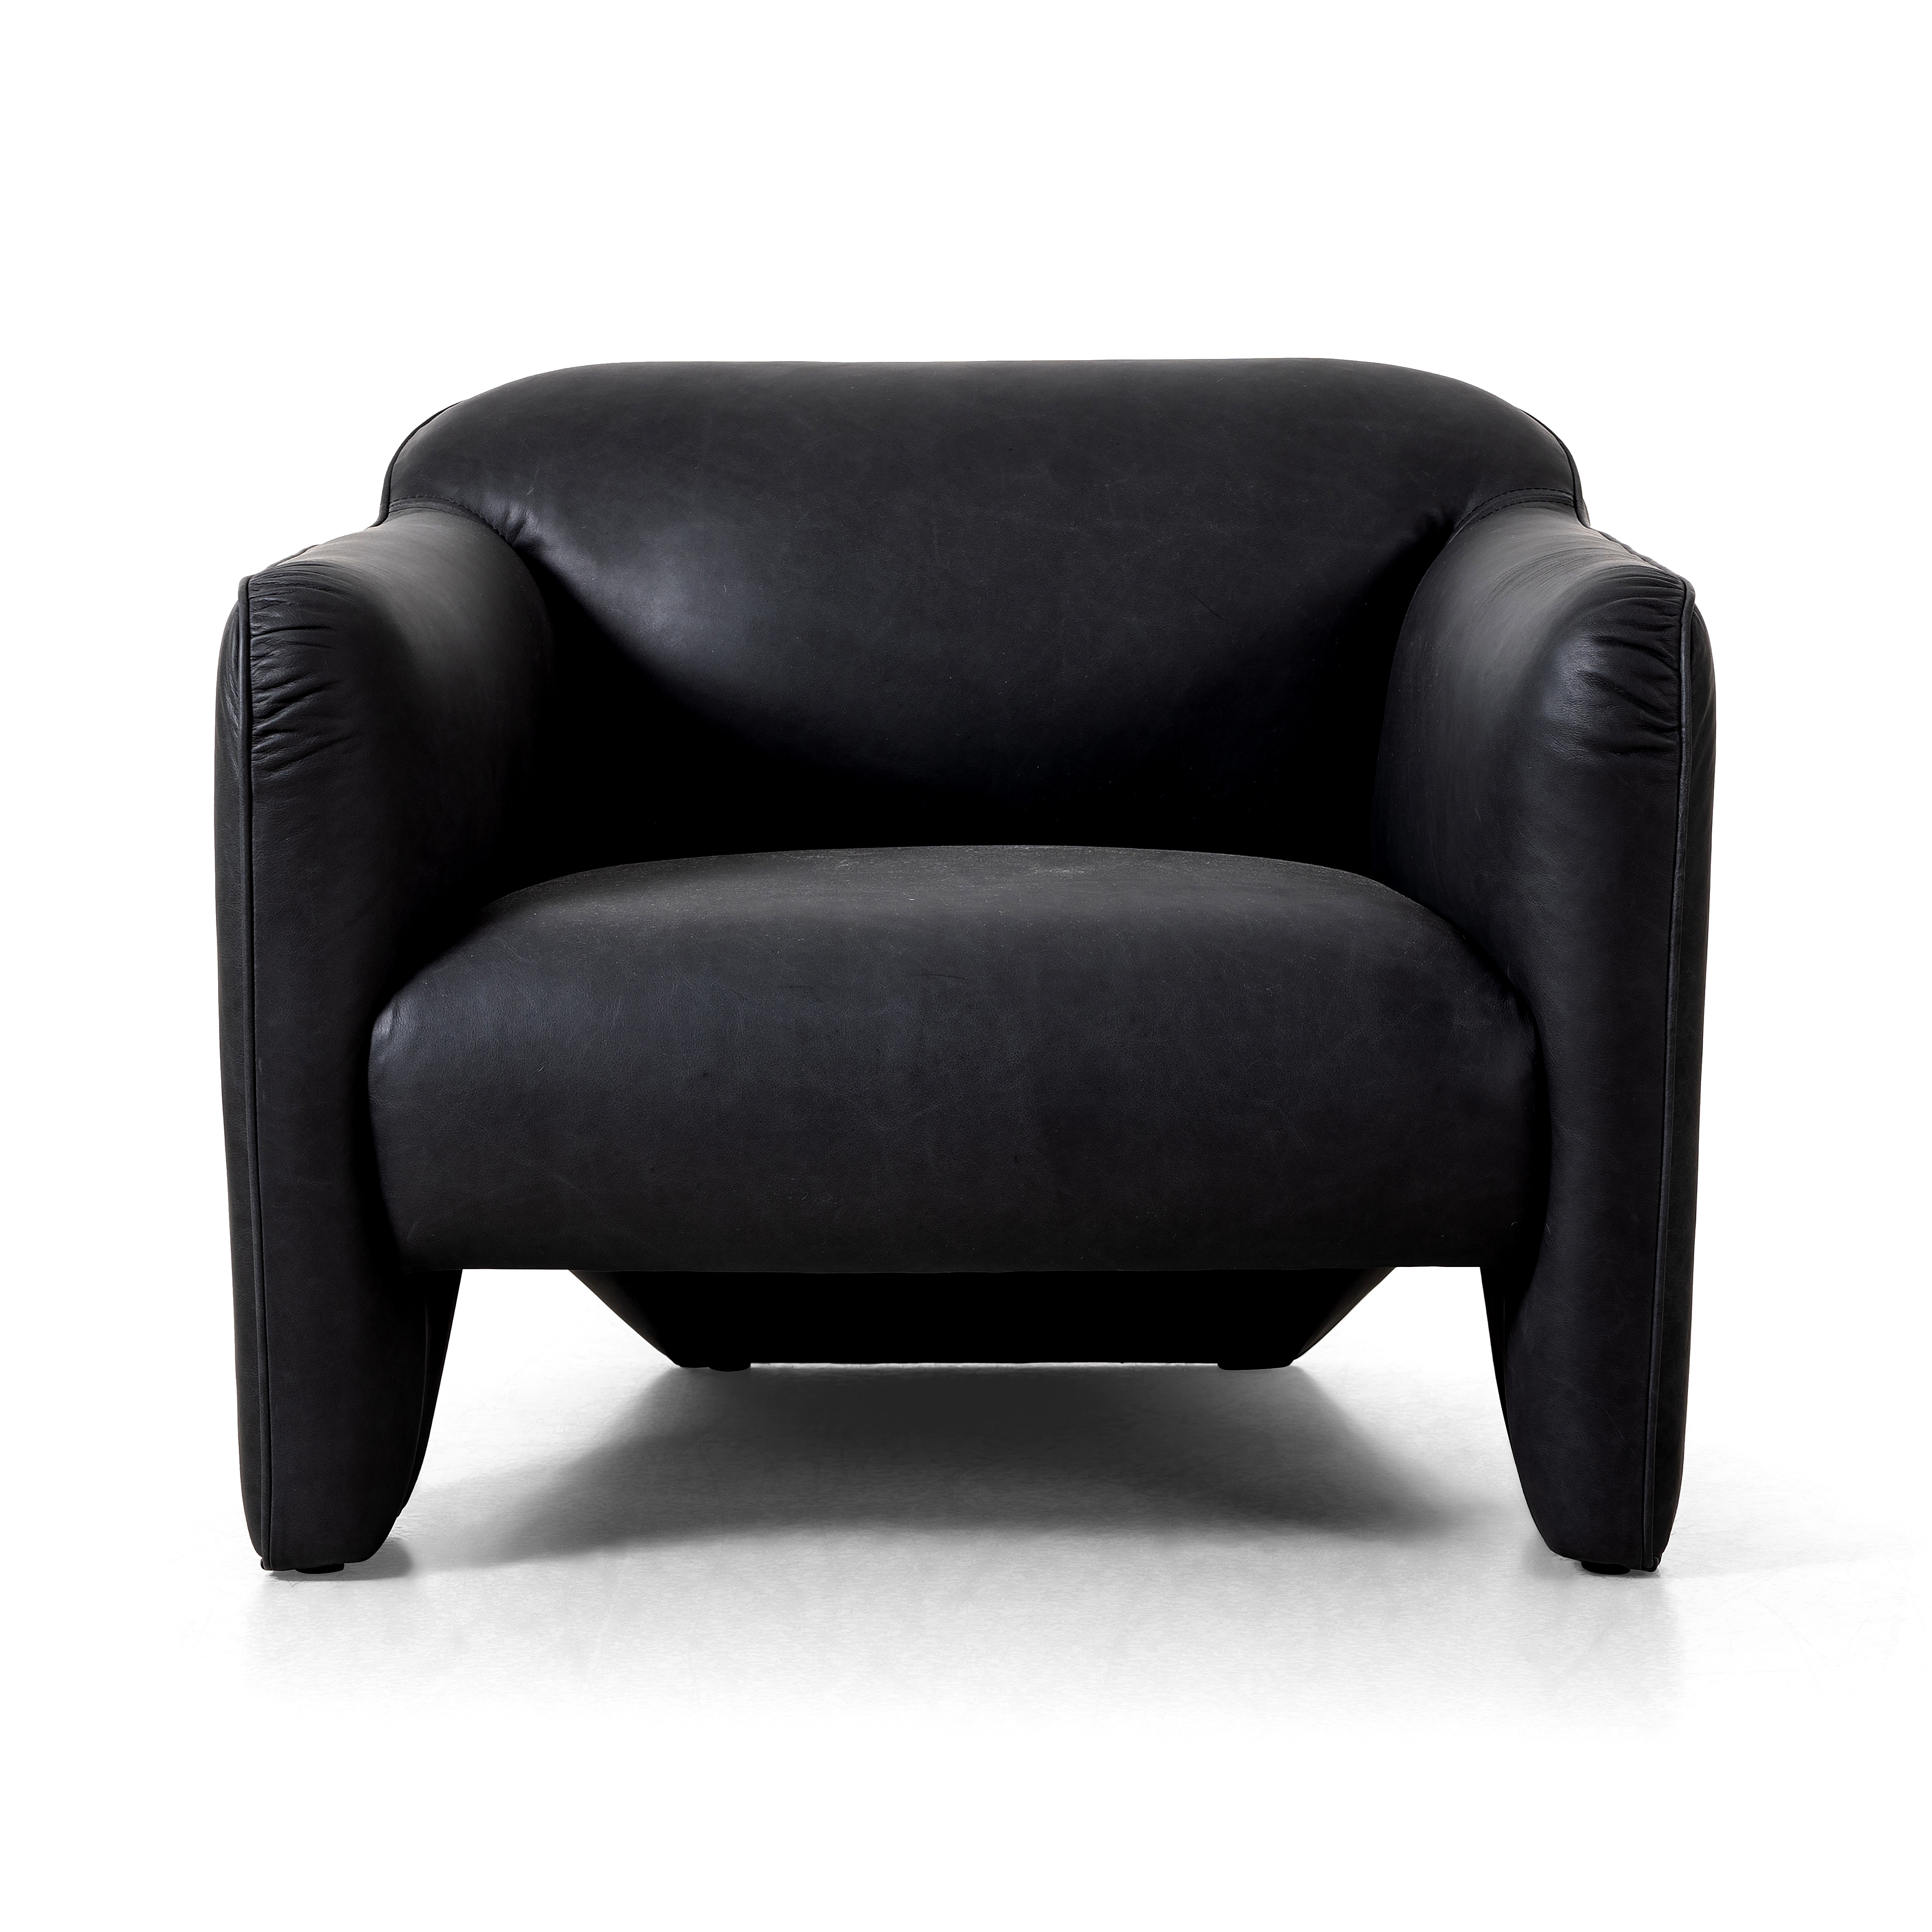 Daria Chair-Eucapel Black - Image 3